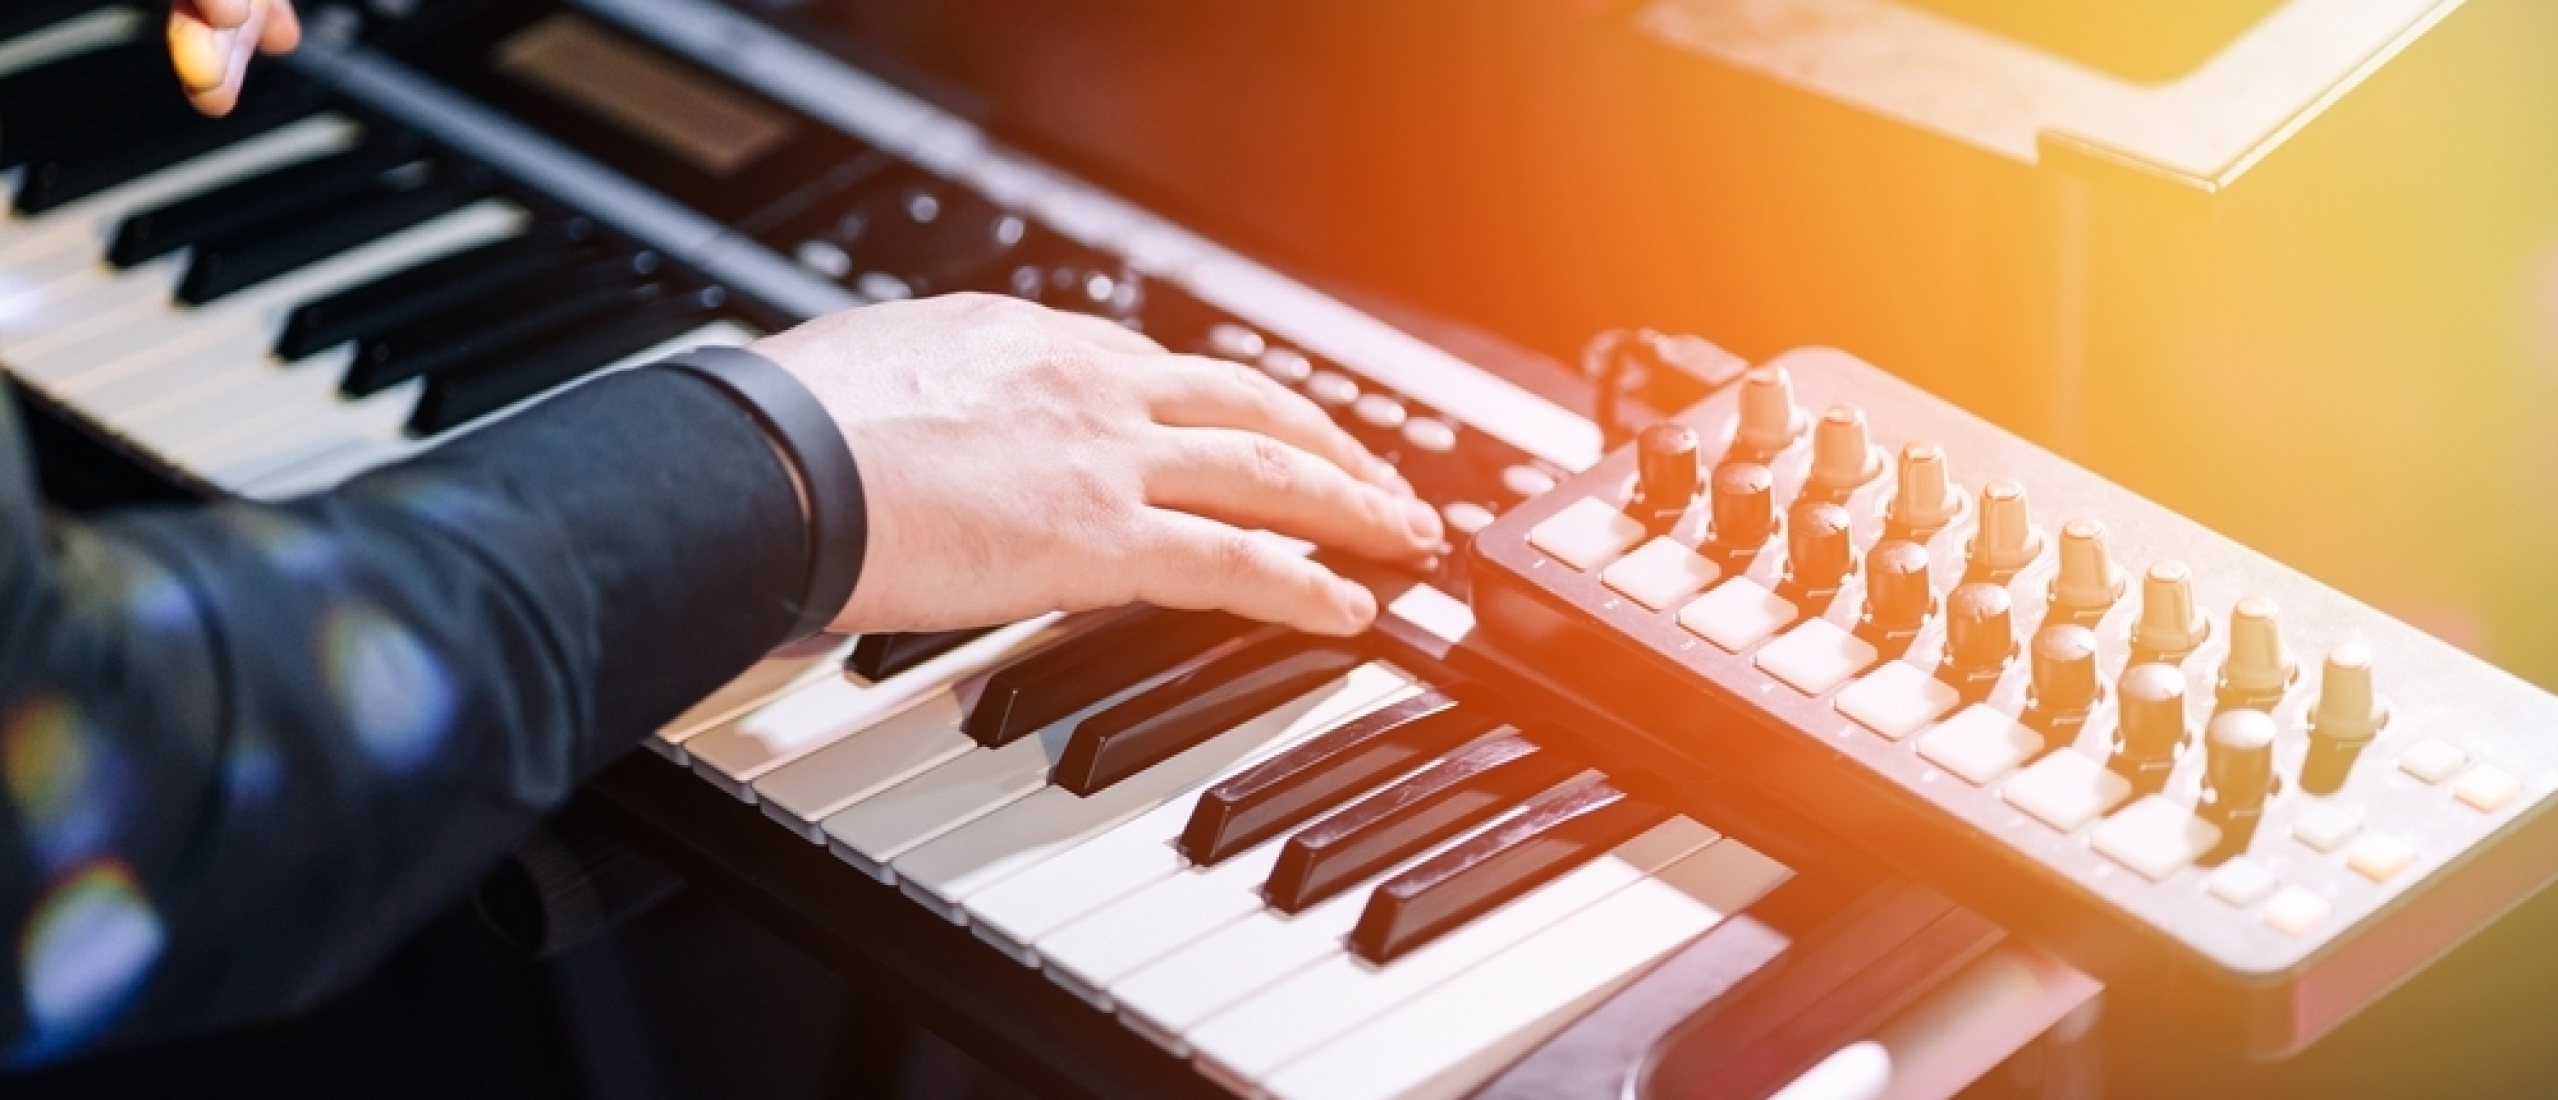 5 Tips om Efficiënt oefenen op je piano voor een beter resultaat